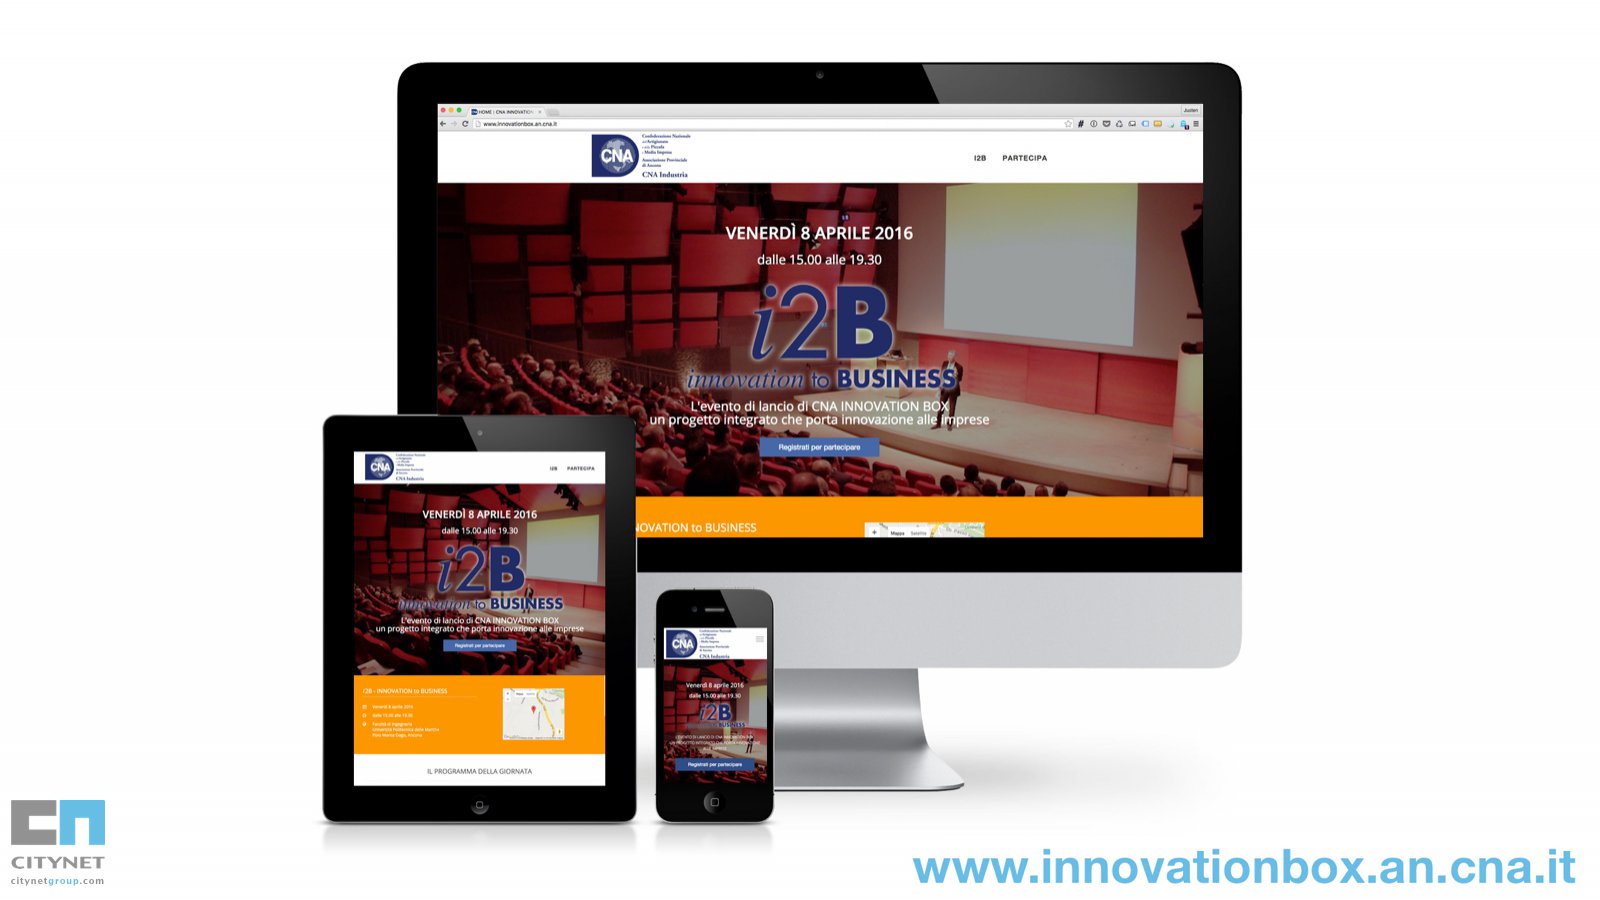 Innovation Box - Citynet Partner del progetto Innovation Box con CNA Industria Ancona 